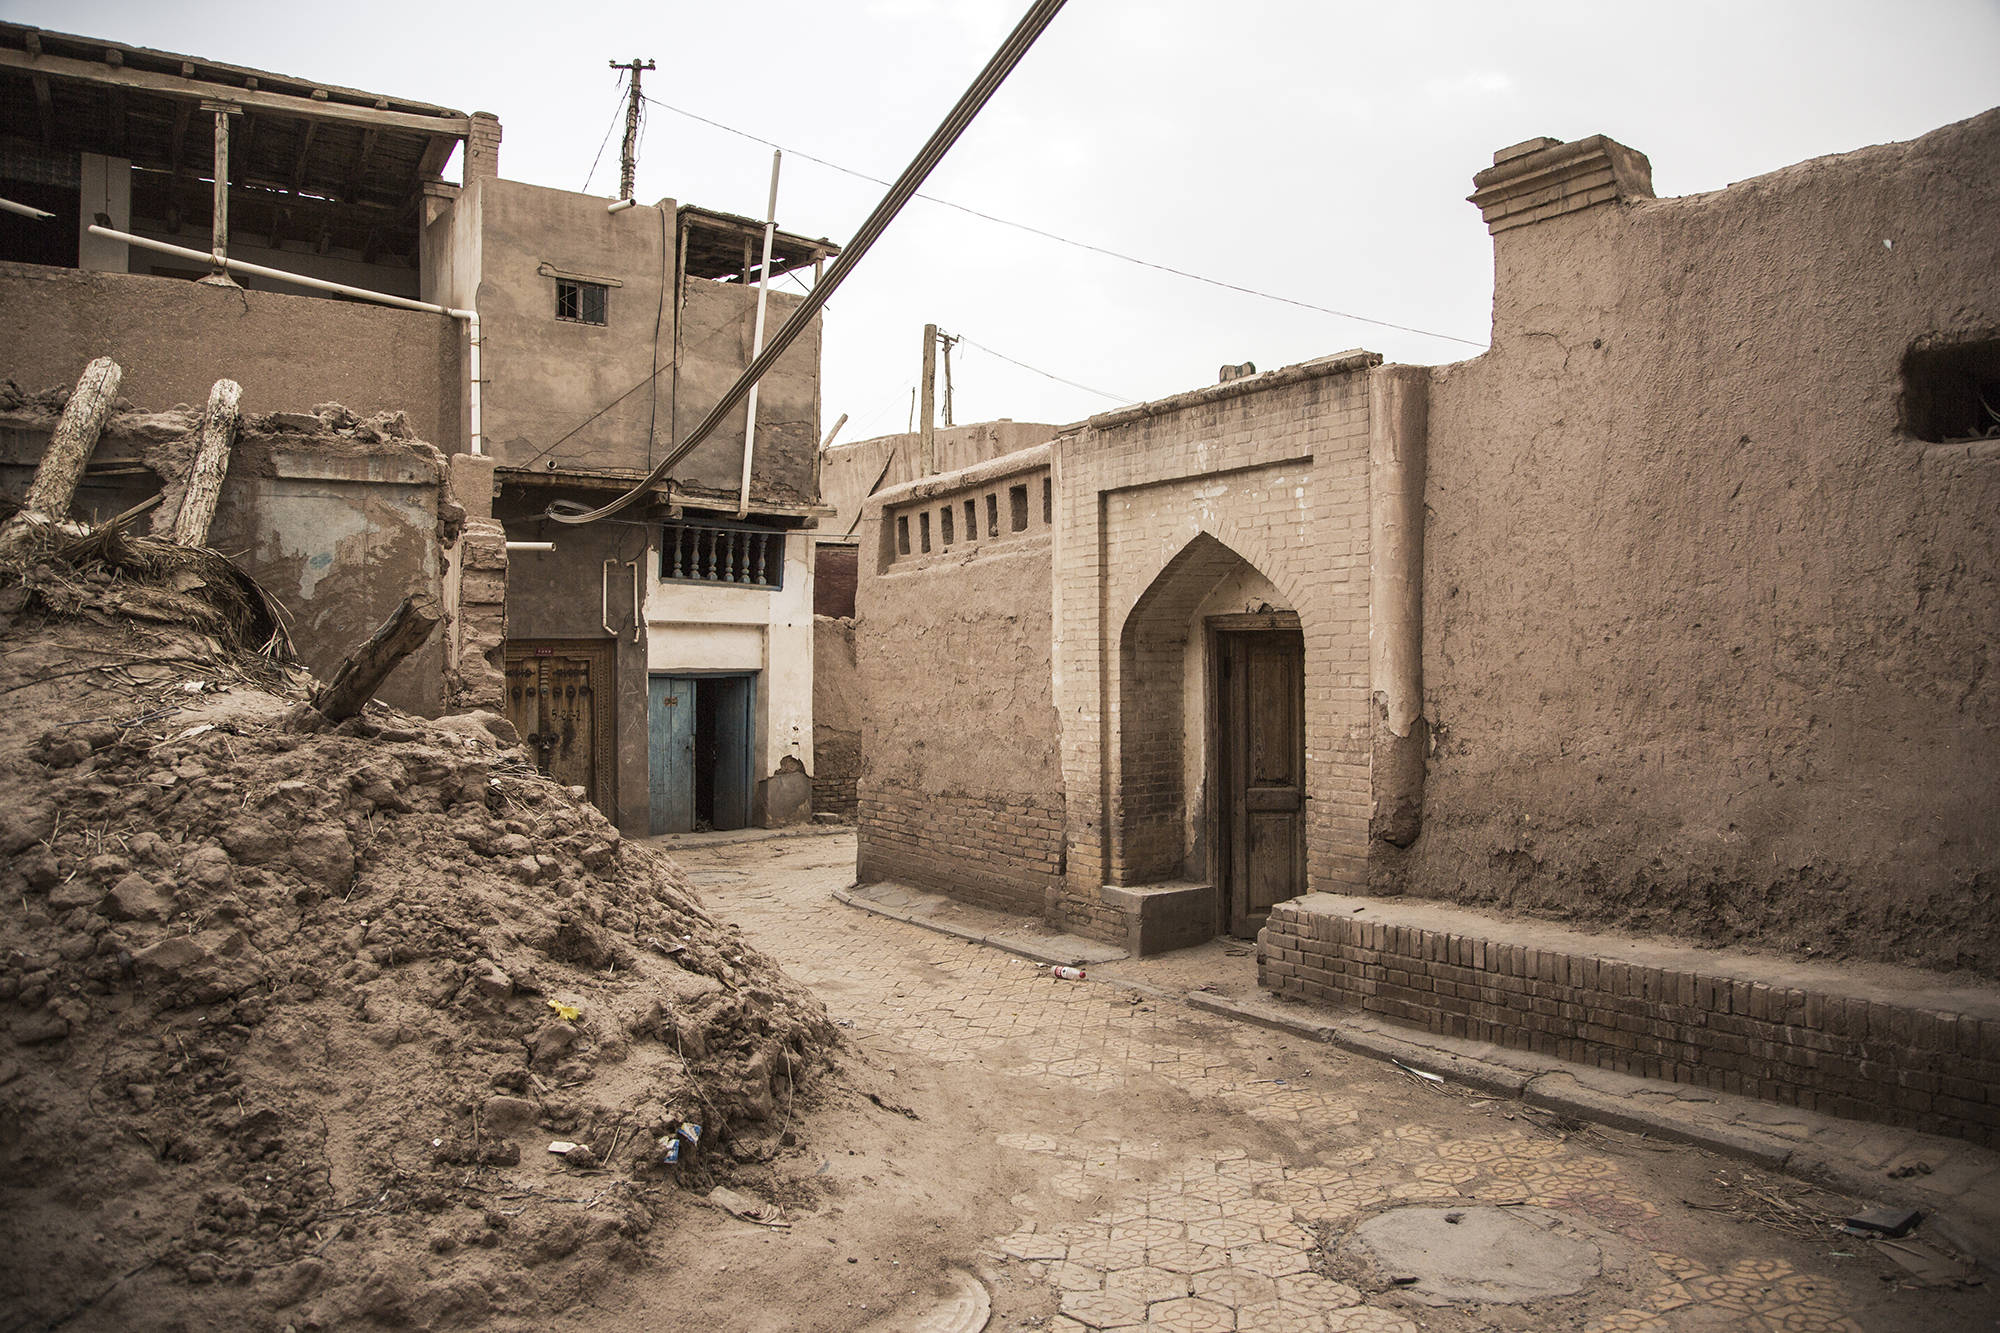 新疆的居民建筑特色图片